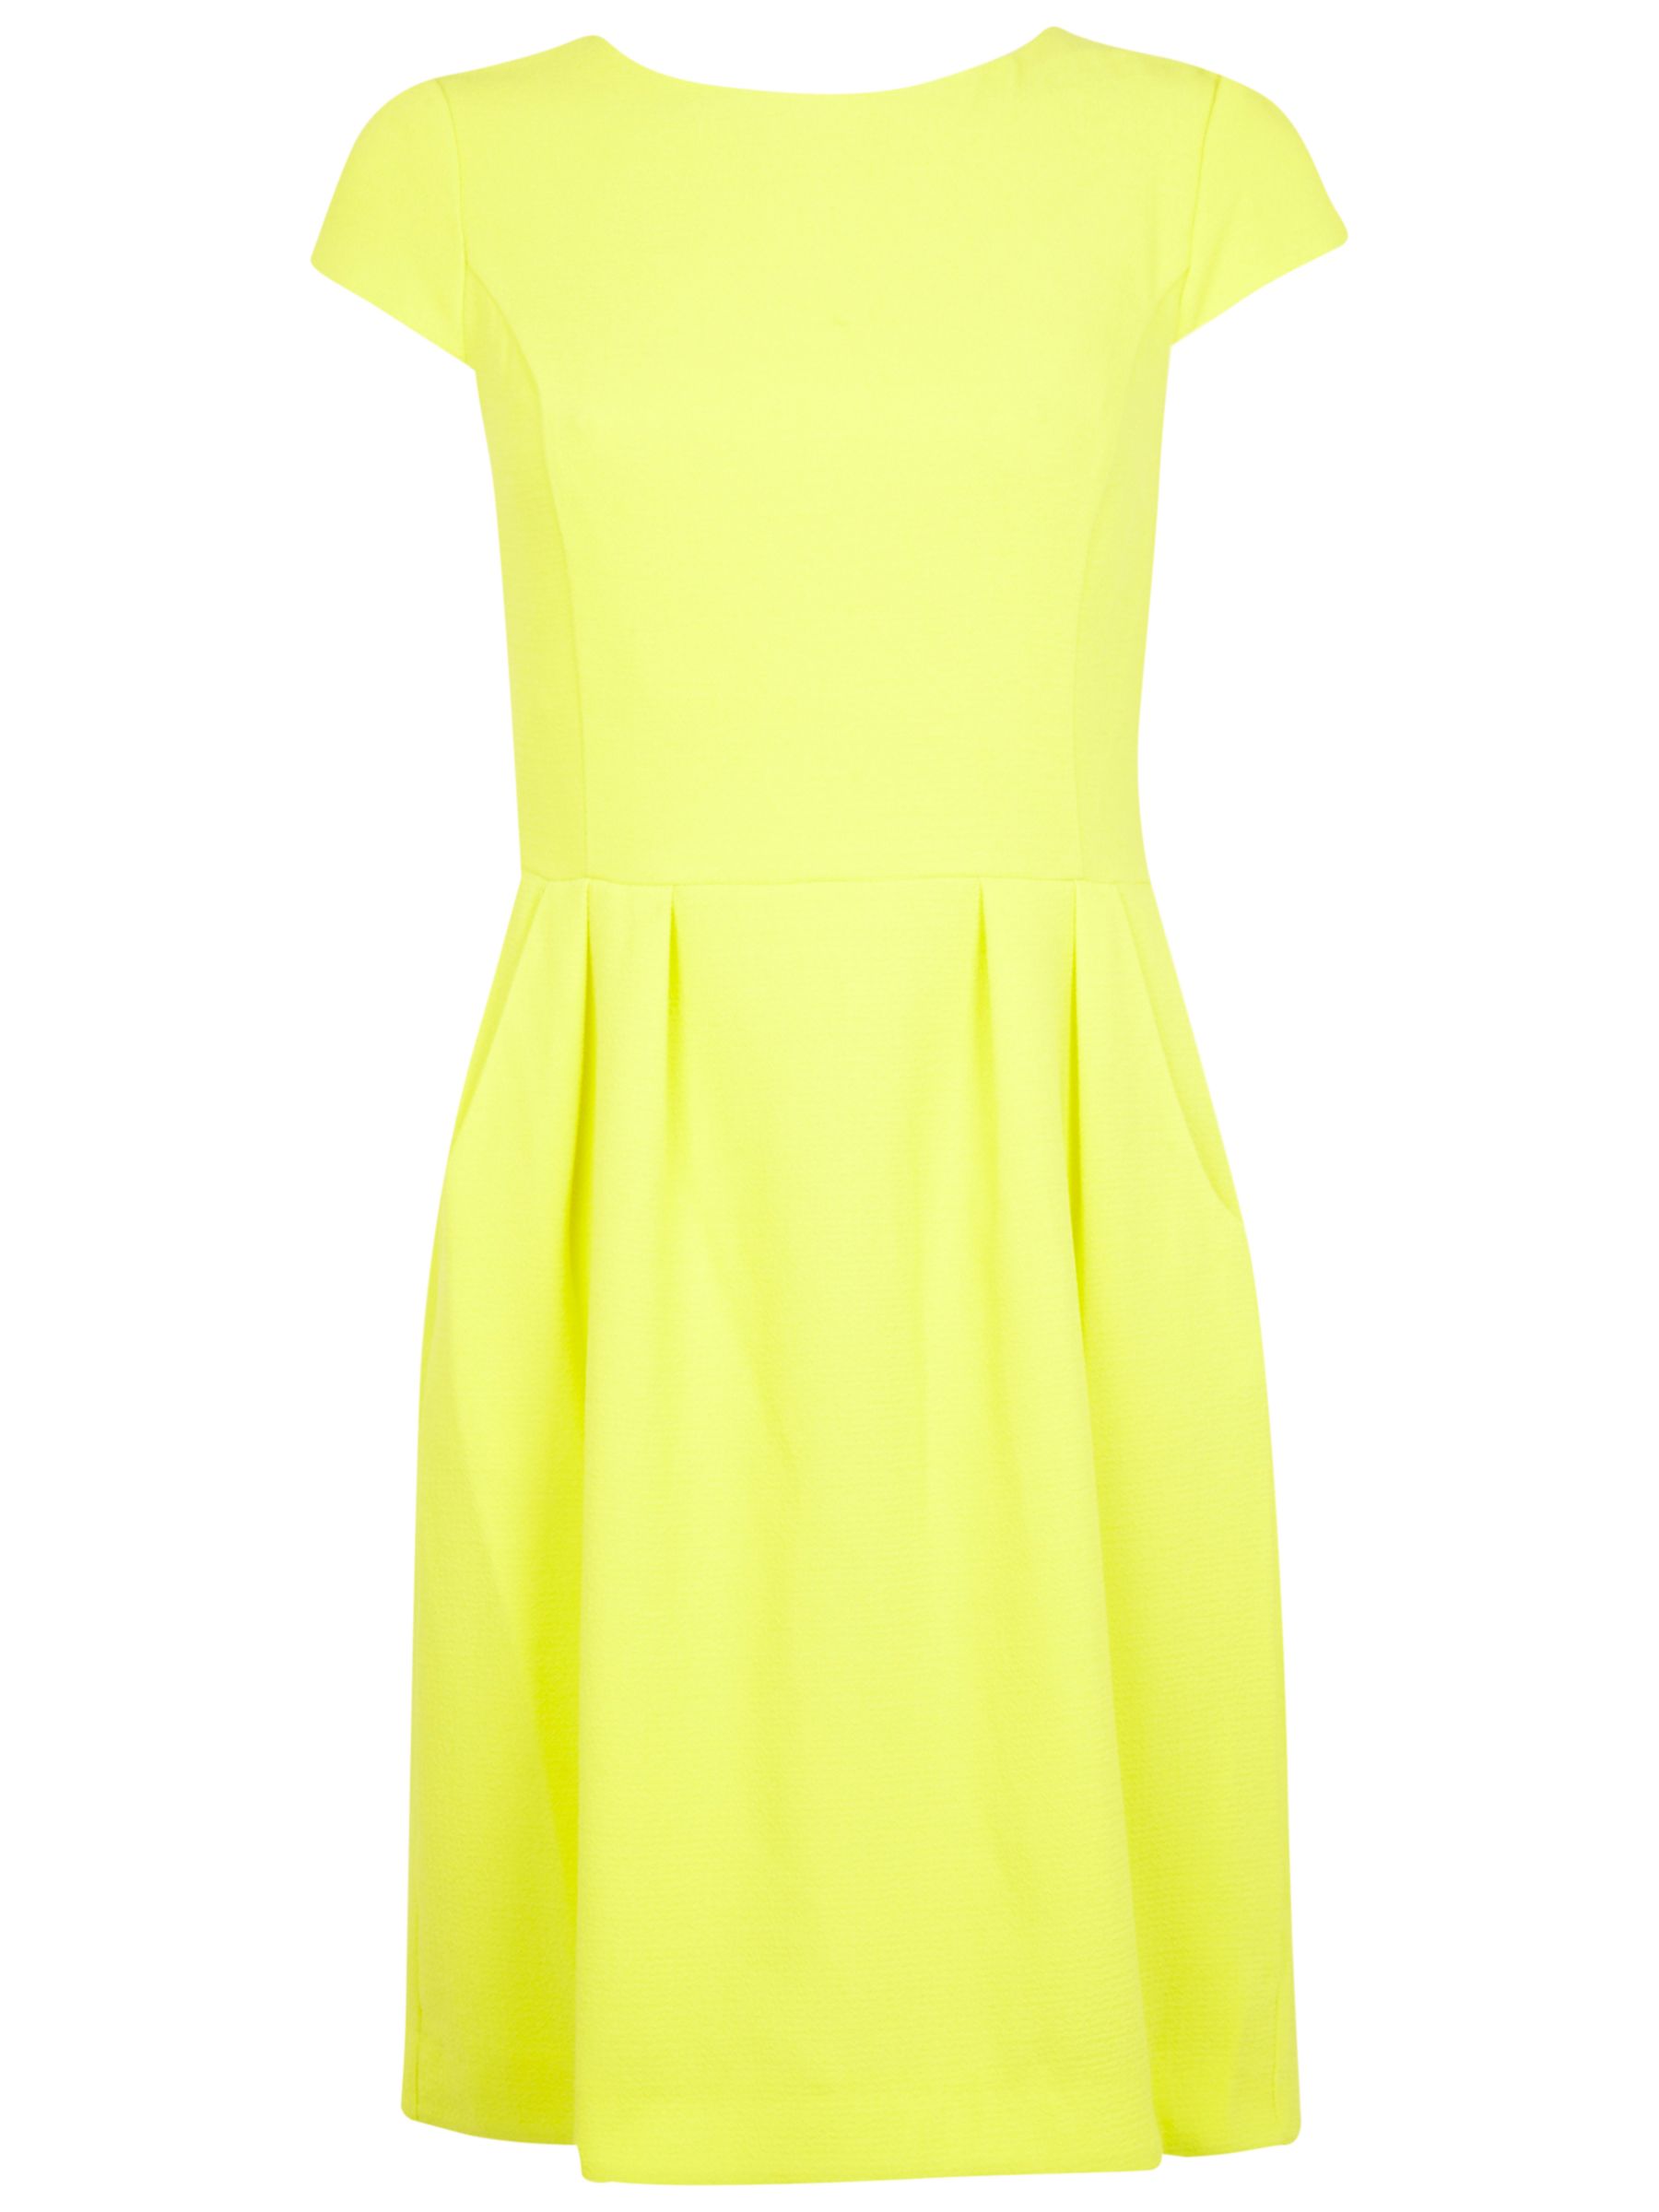 Buy Miss Selfridge Crepe Tulip Dress, Yellow Online at johnlewis.com